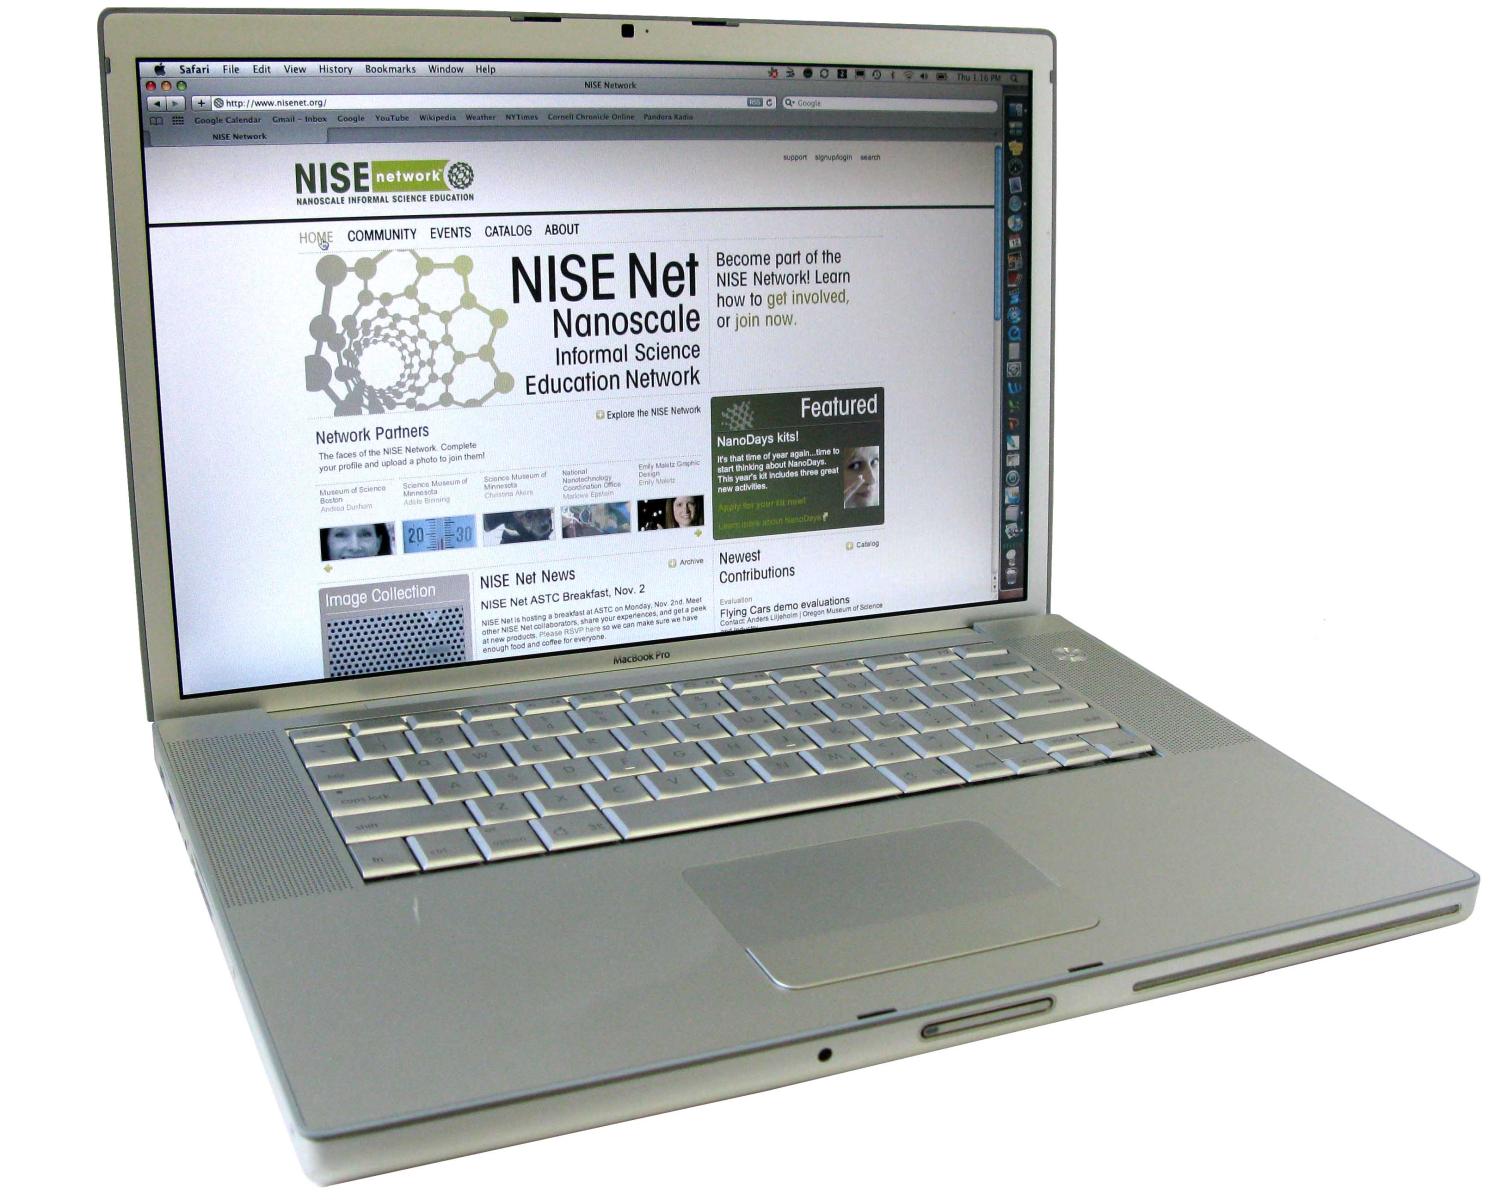 laptop screen showing a NISE Net webpage.